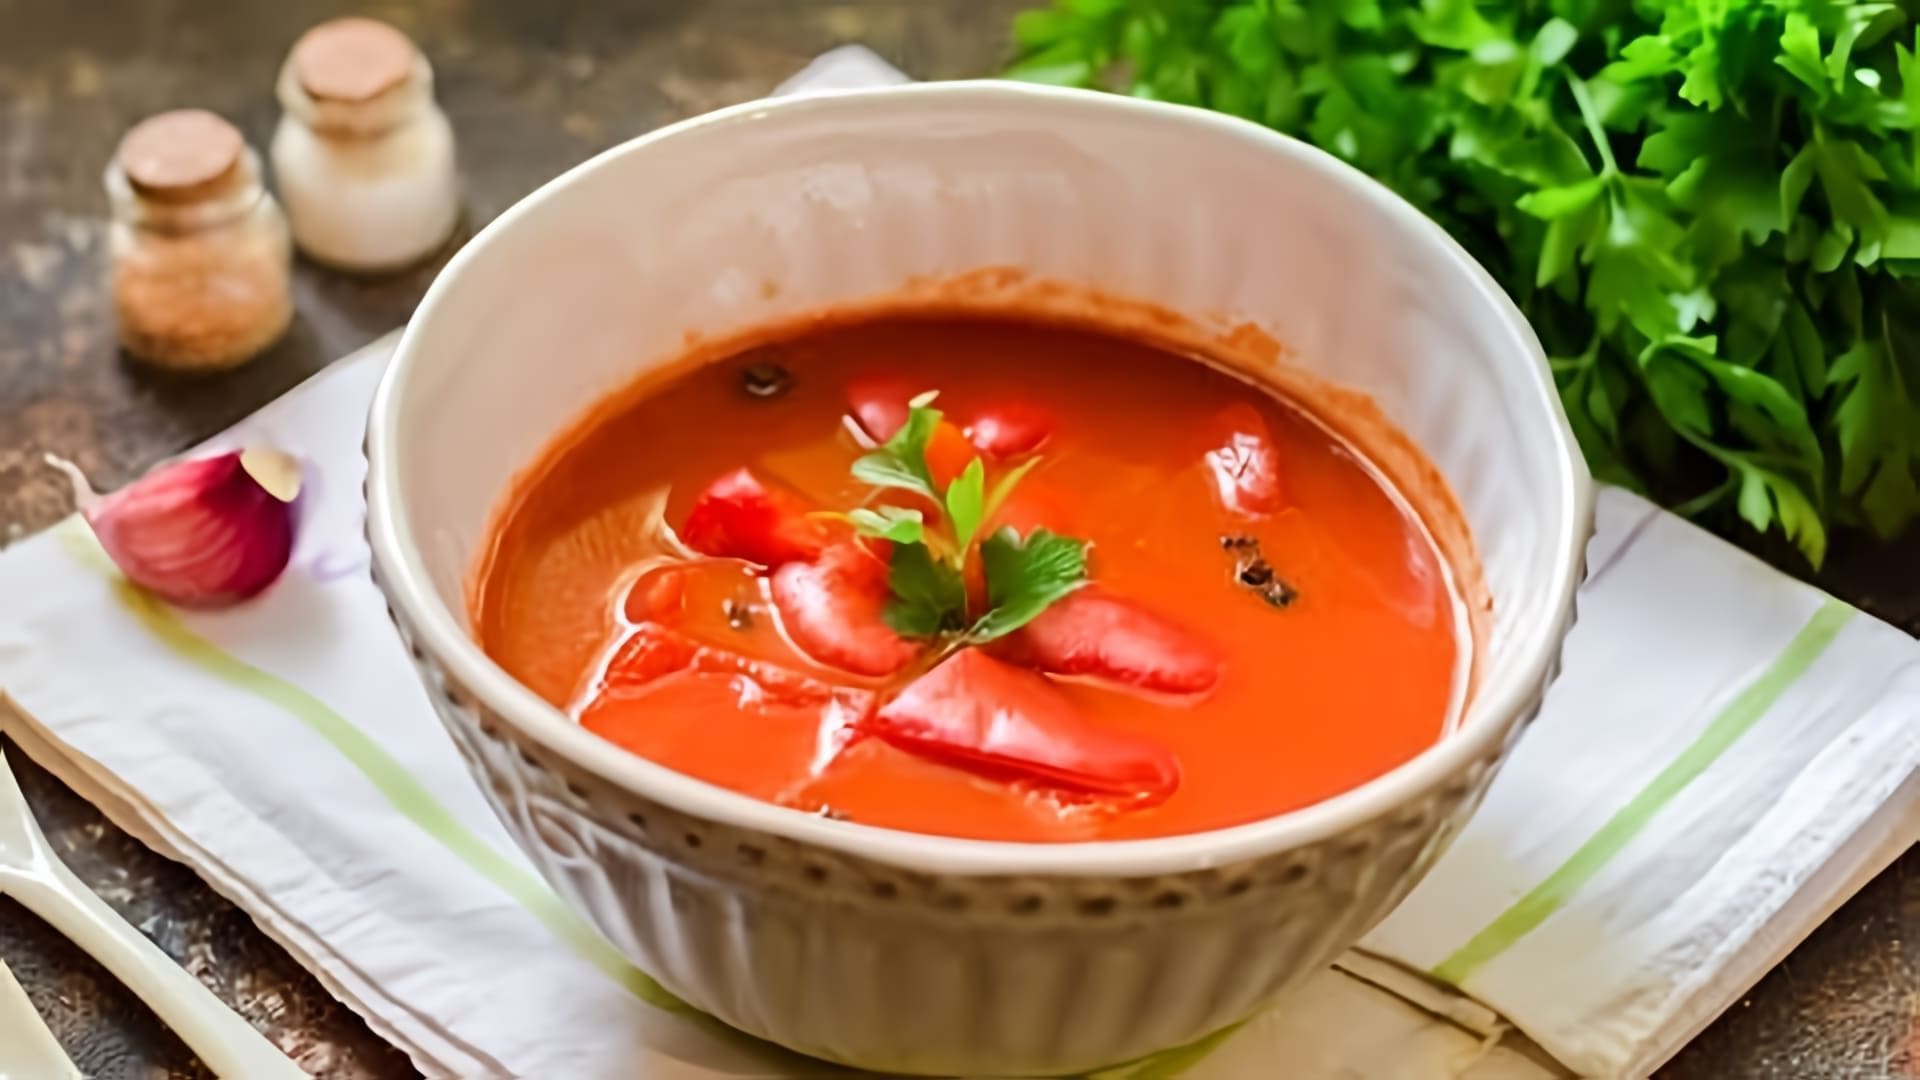 В этом видео демонстрируется процесс приготовления лечо, популярной закуски из томатного сока и сладкого перца, как в СССР